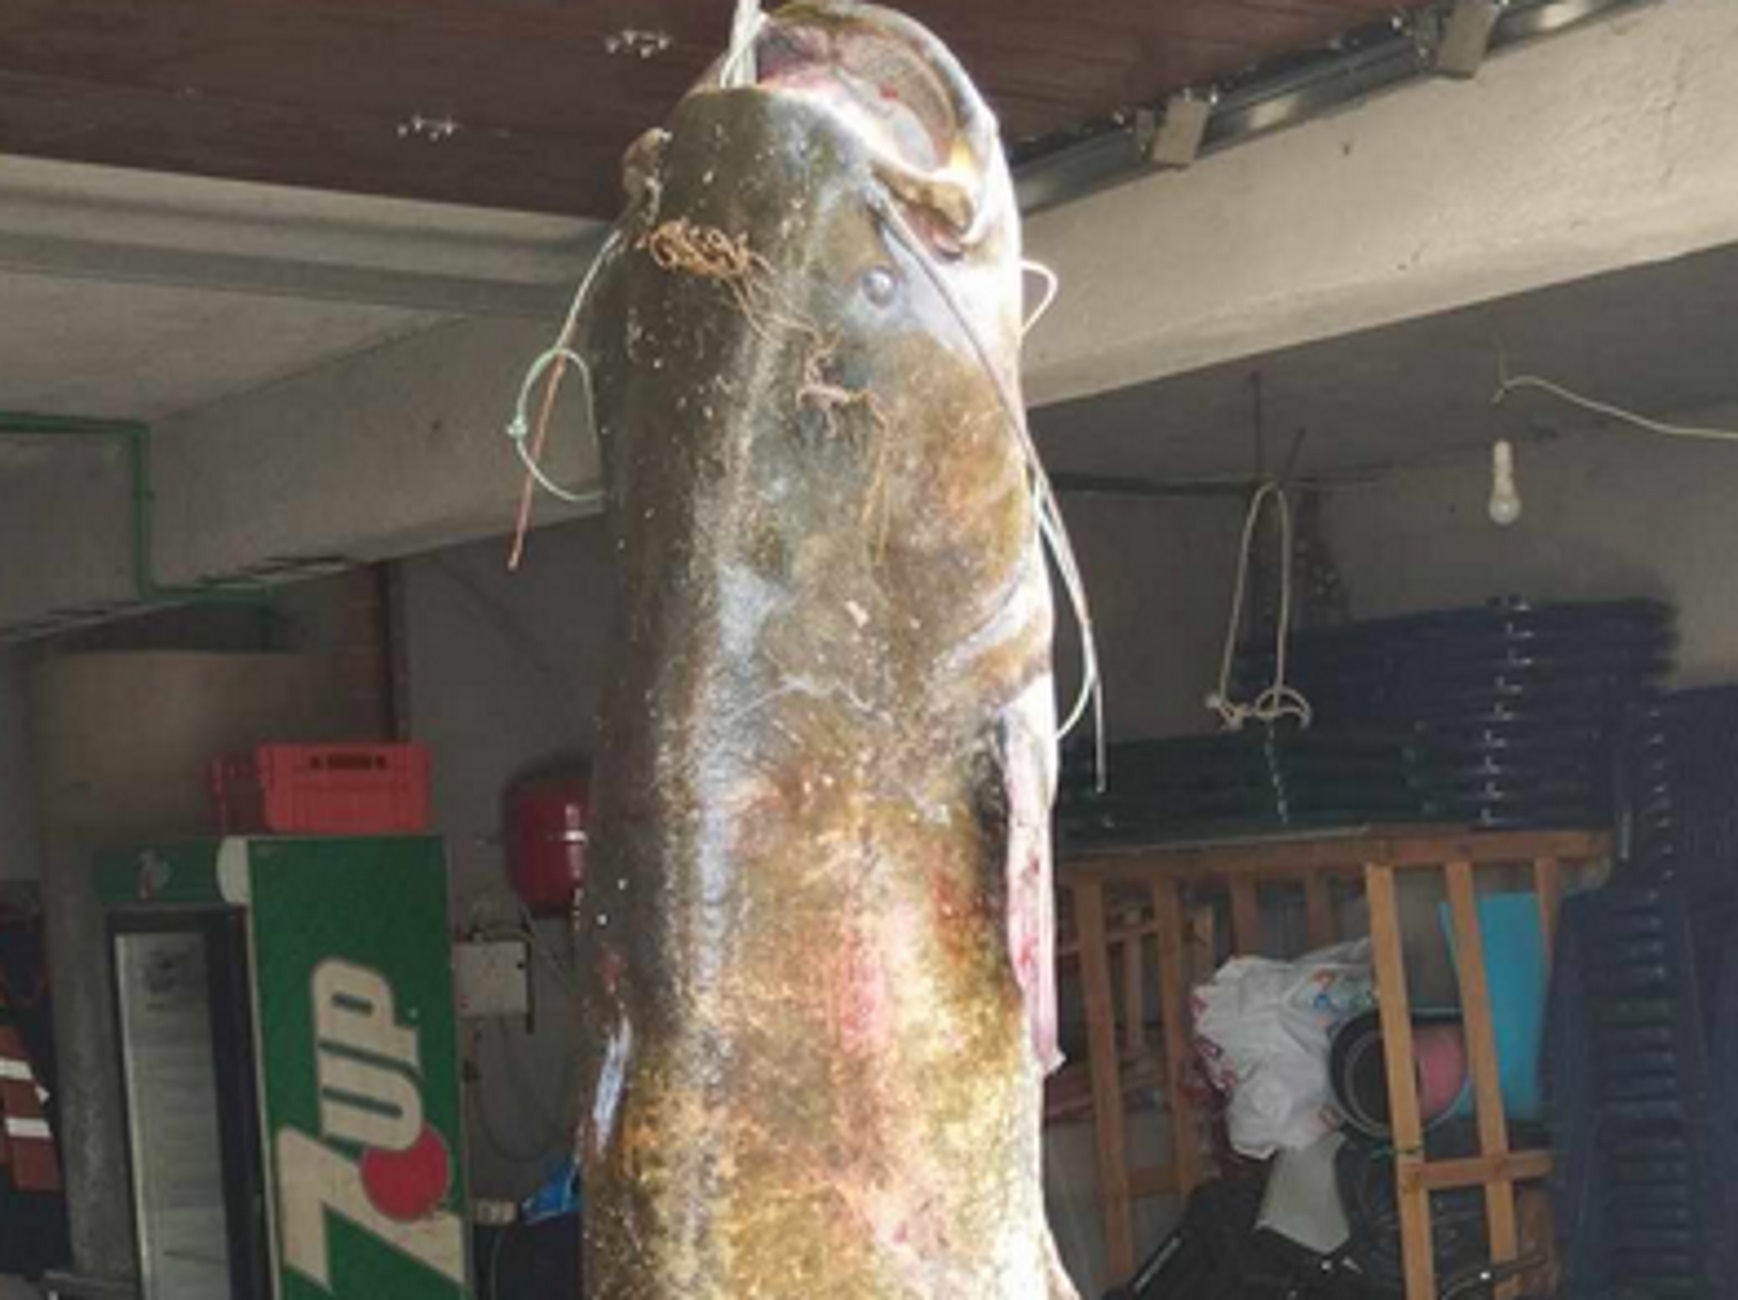 Κοζάνη: Γουλιανός 50 κιλών στα δίχτυα ψαράδων στη λίμνη Πολυφύτου